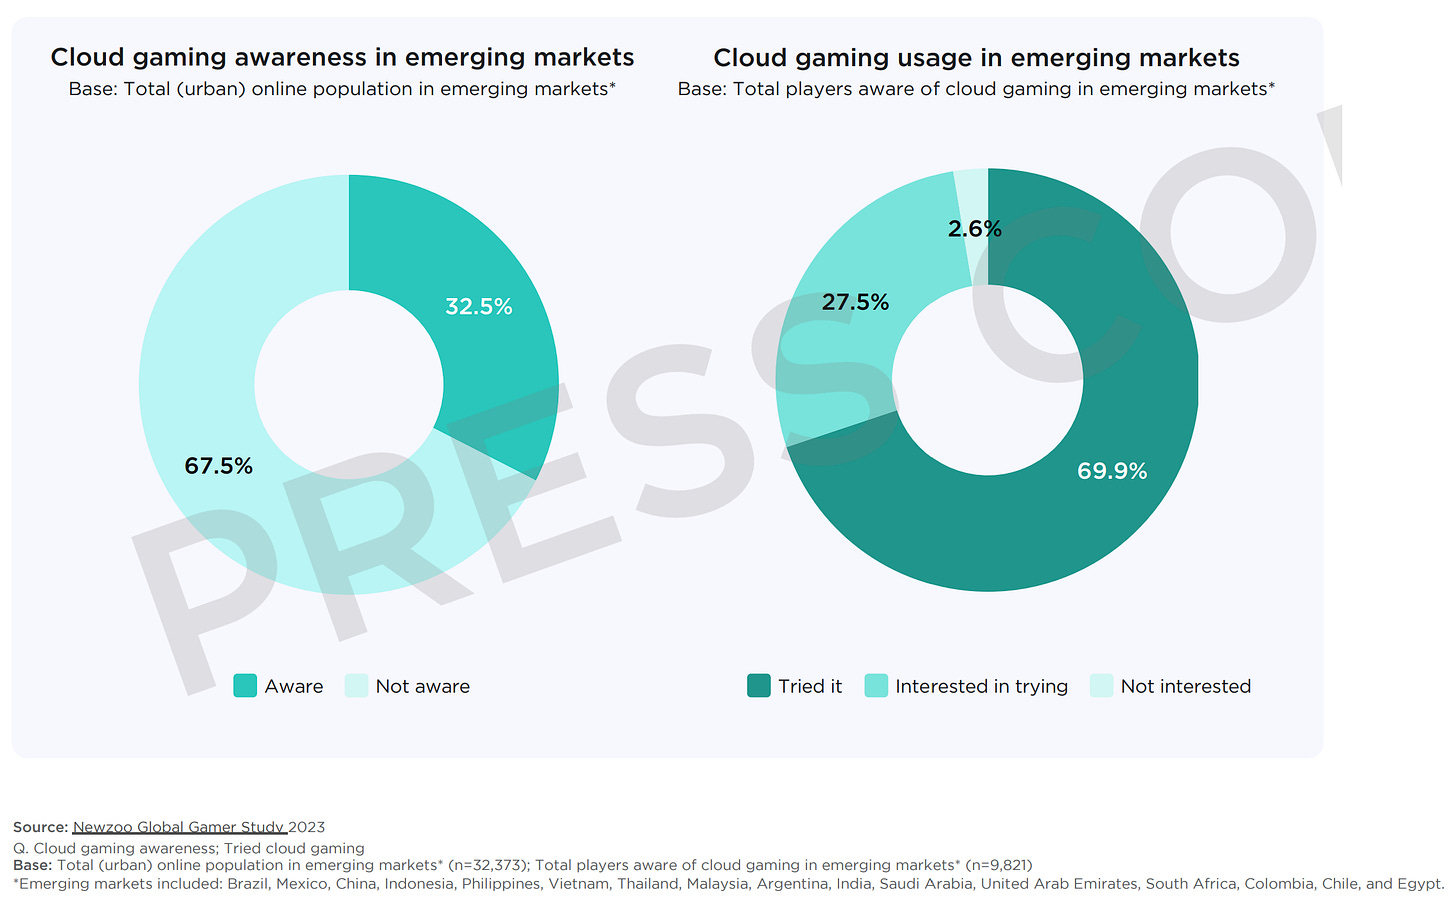 cloud gaming awareness and usage